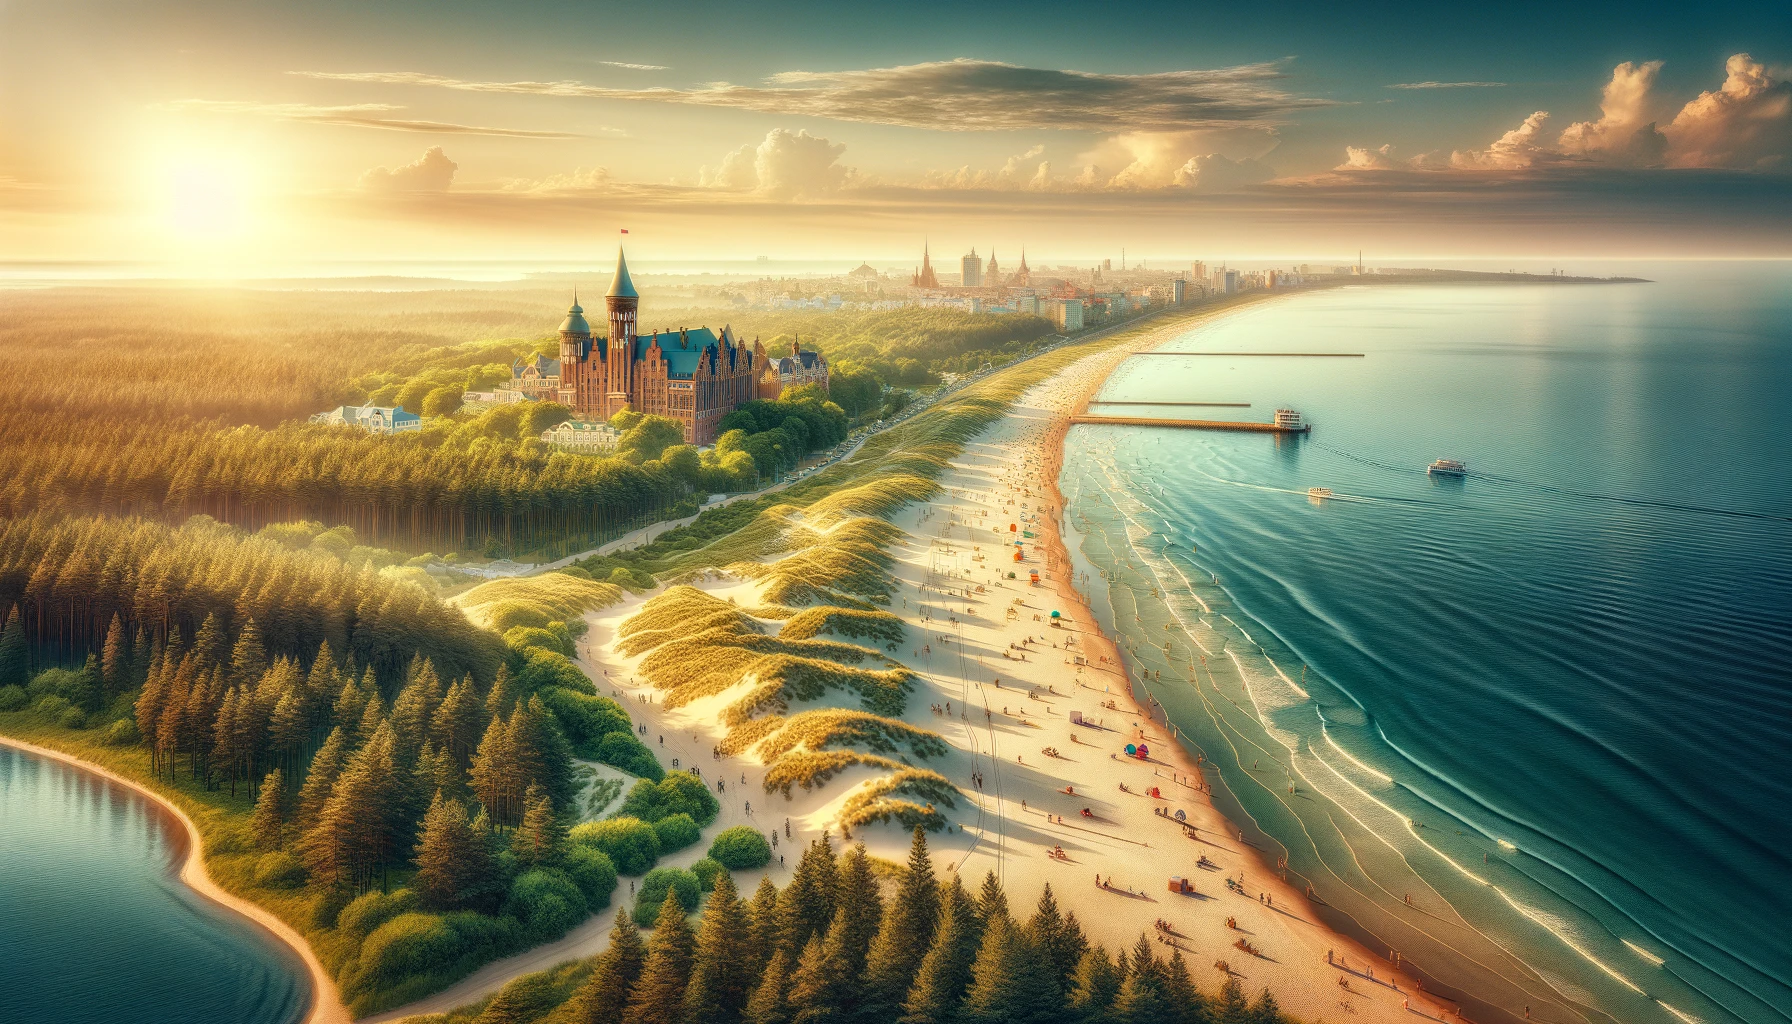 широкоформатное изображение, иллюстрирующее потрясающую красоту курорта Калининград.

